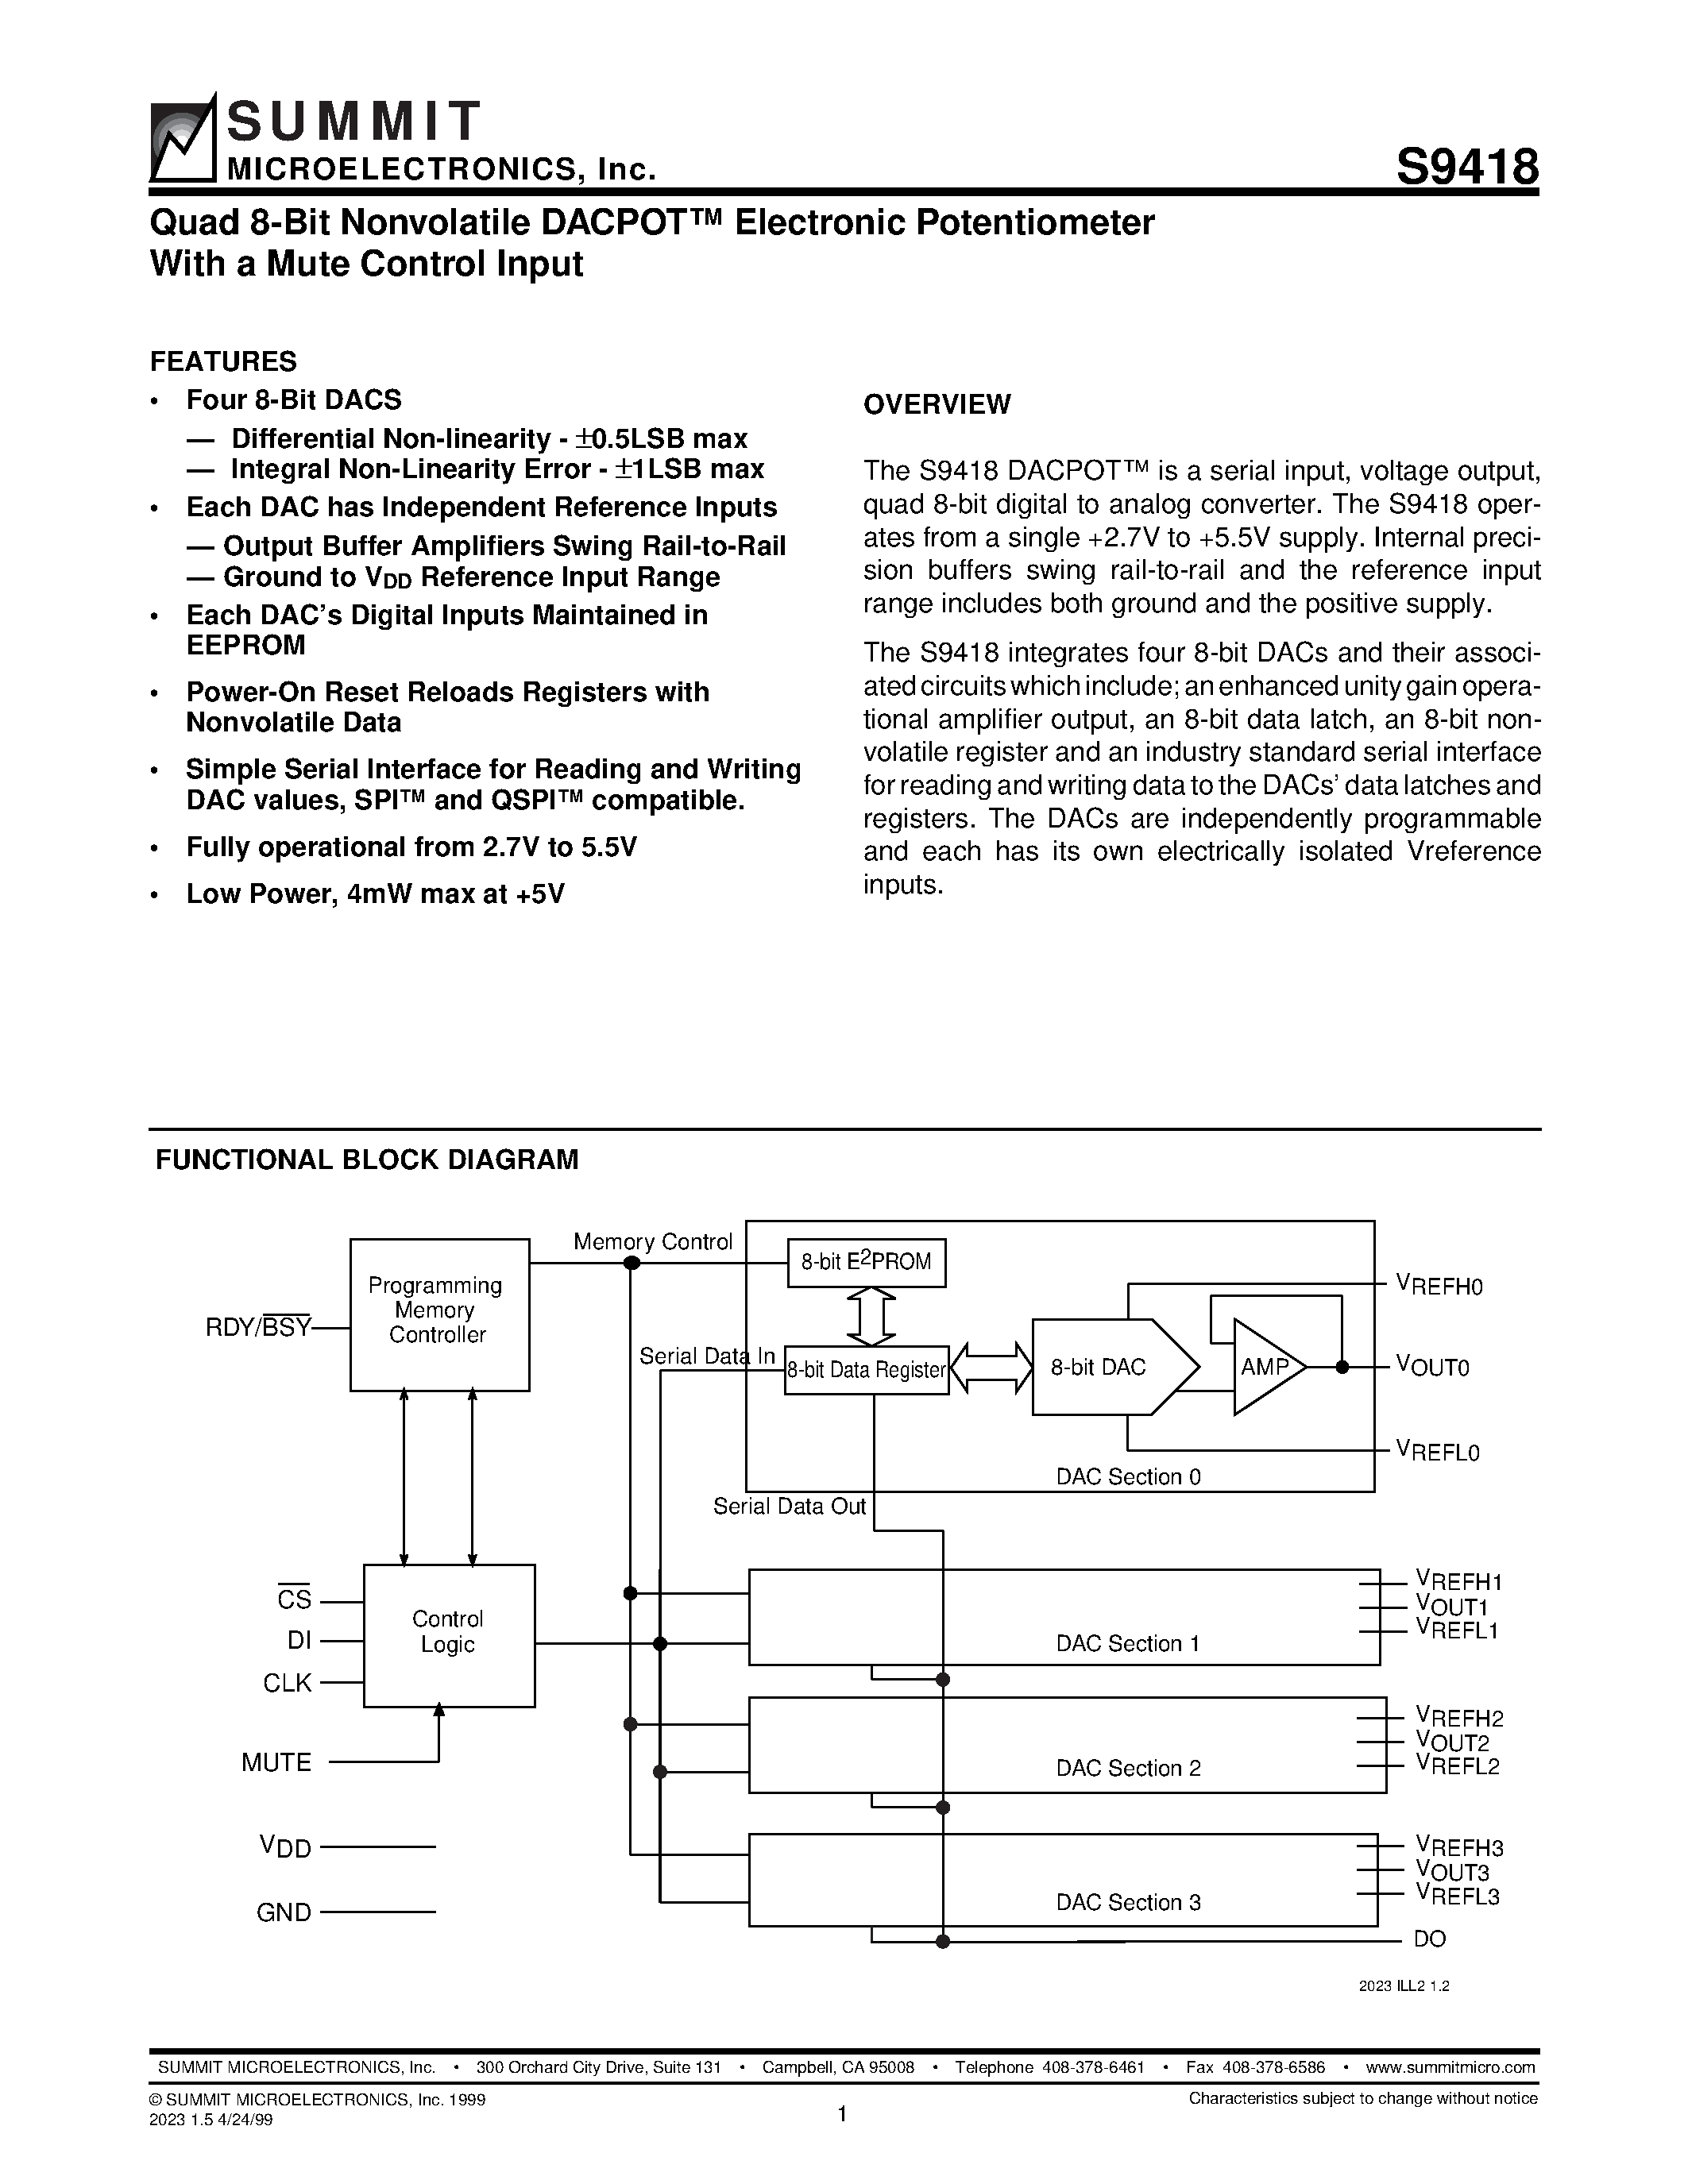 Даташит S9418 - Quad 8-Bit Nonvolatile DACPOT Electronic Potentiometer With a Mute Control Input страница 1